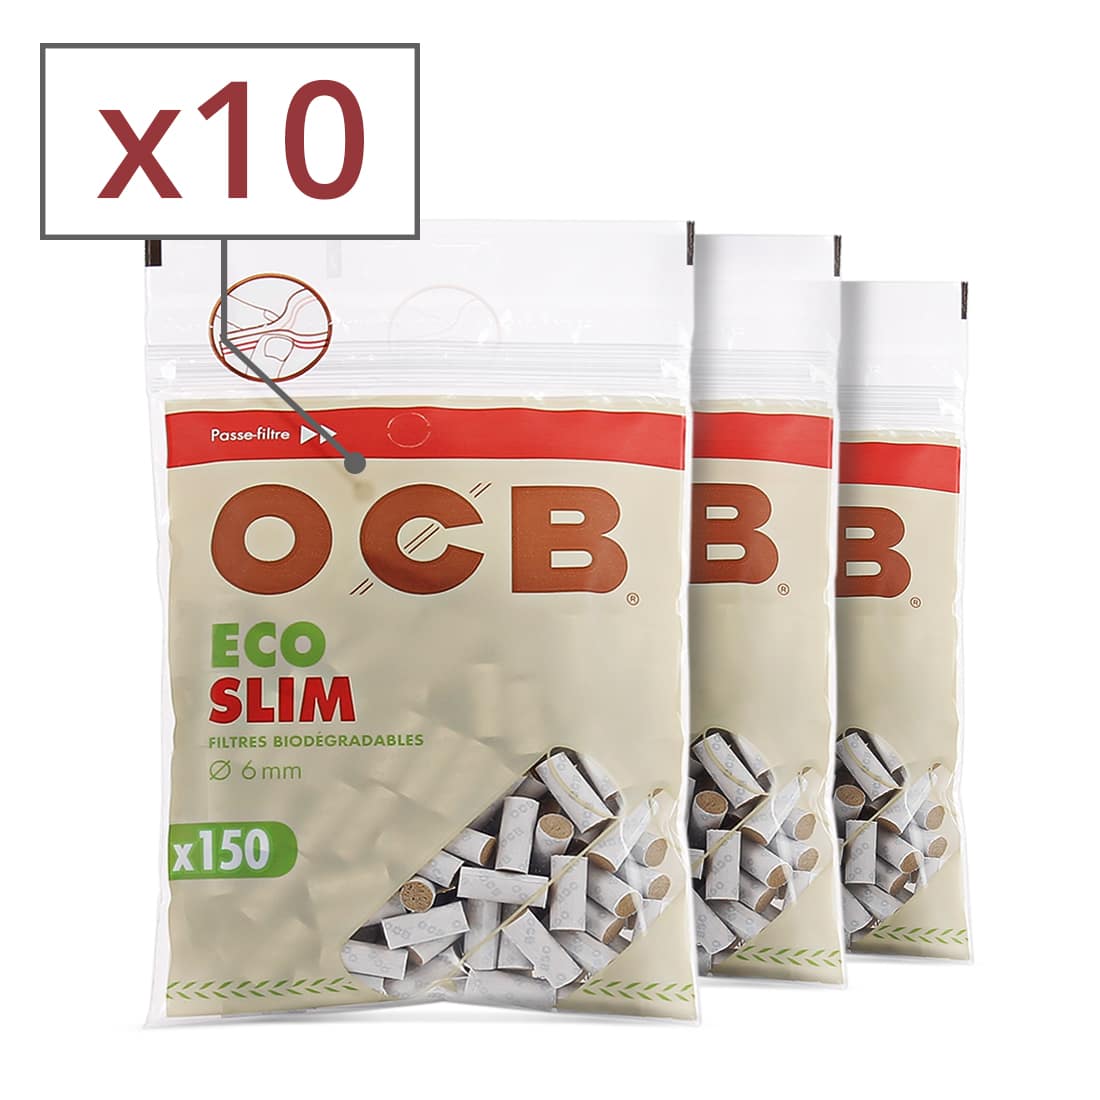 Filtres OCB slim éco bio lots de 1 à 200 sachets de filtres slim 6mm en mousse 